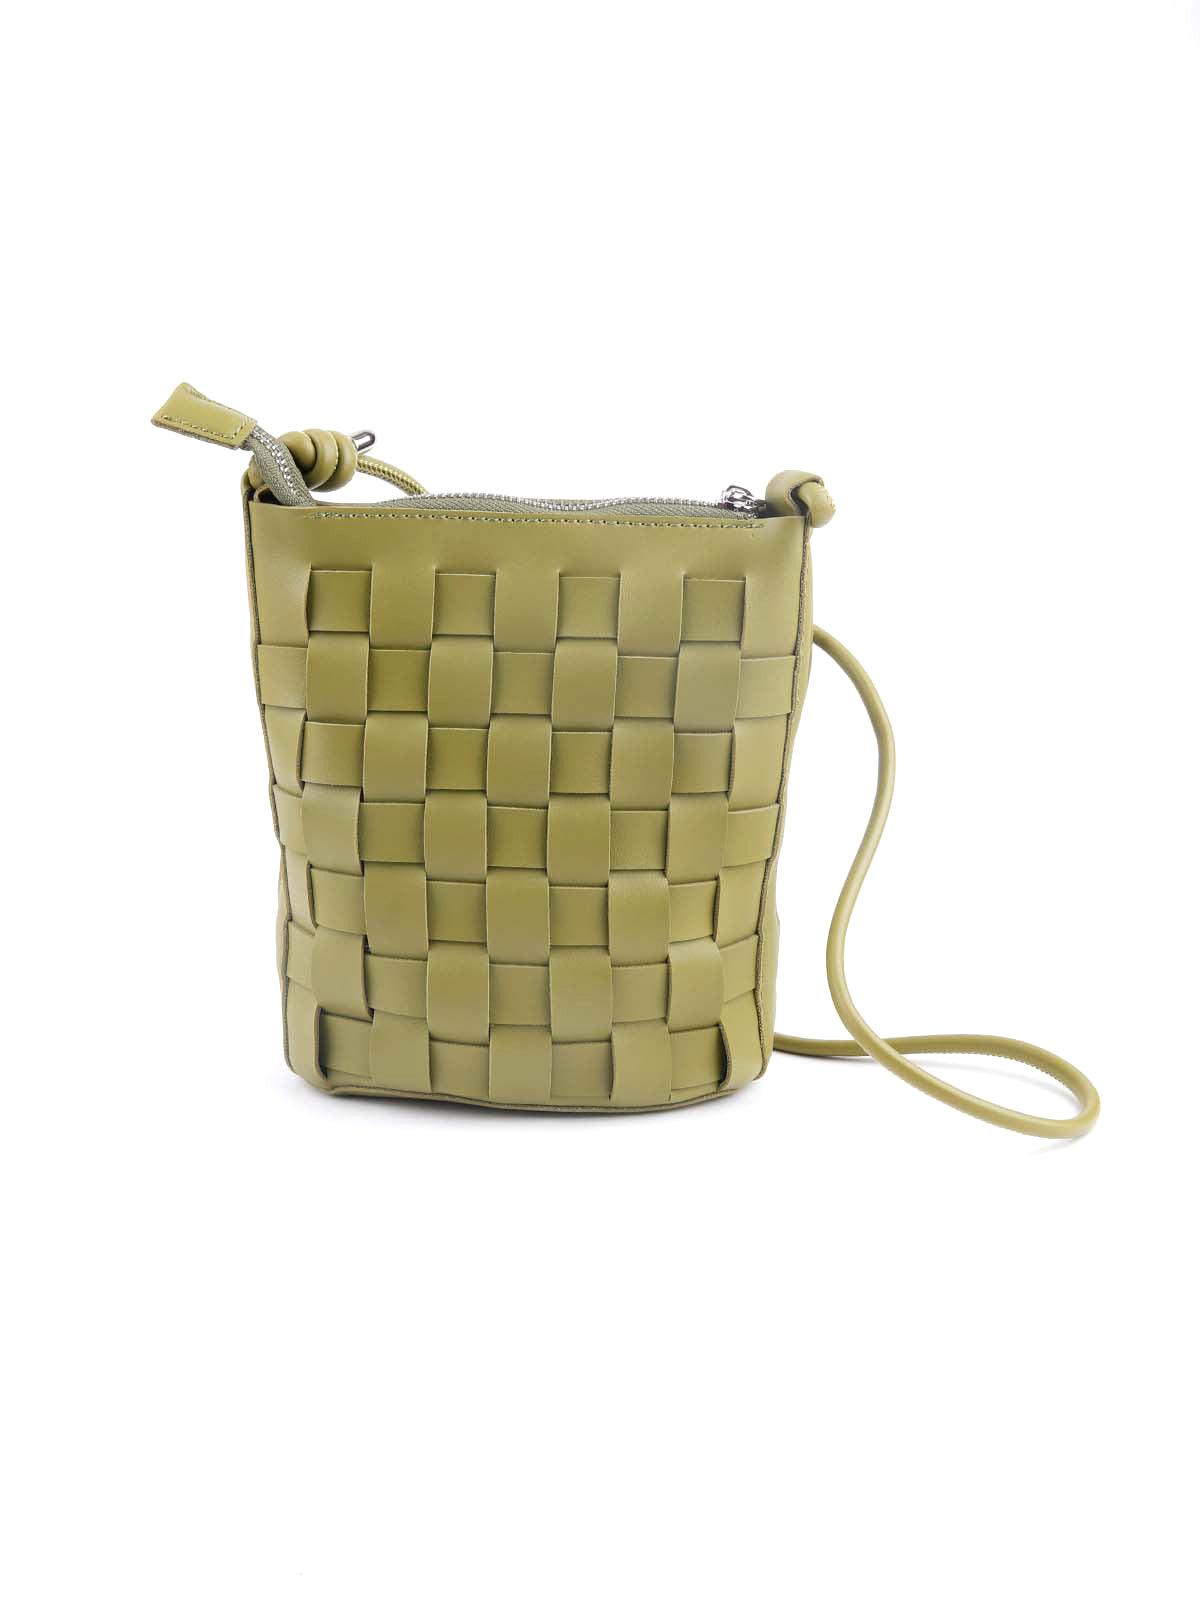 Olive green textured sling bag - Odette